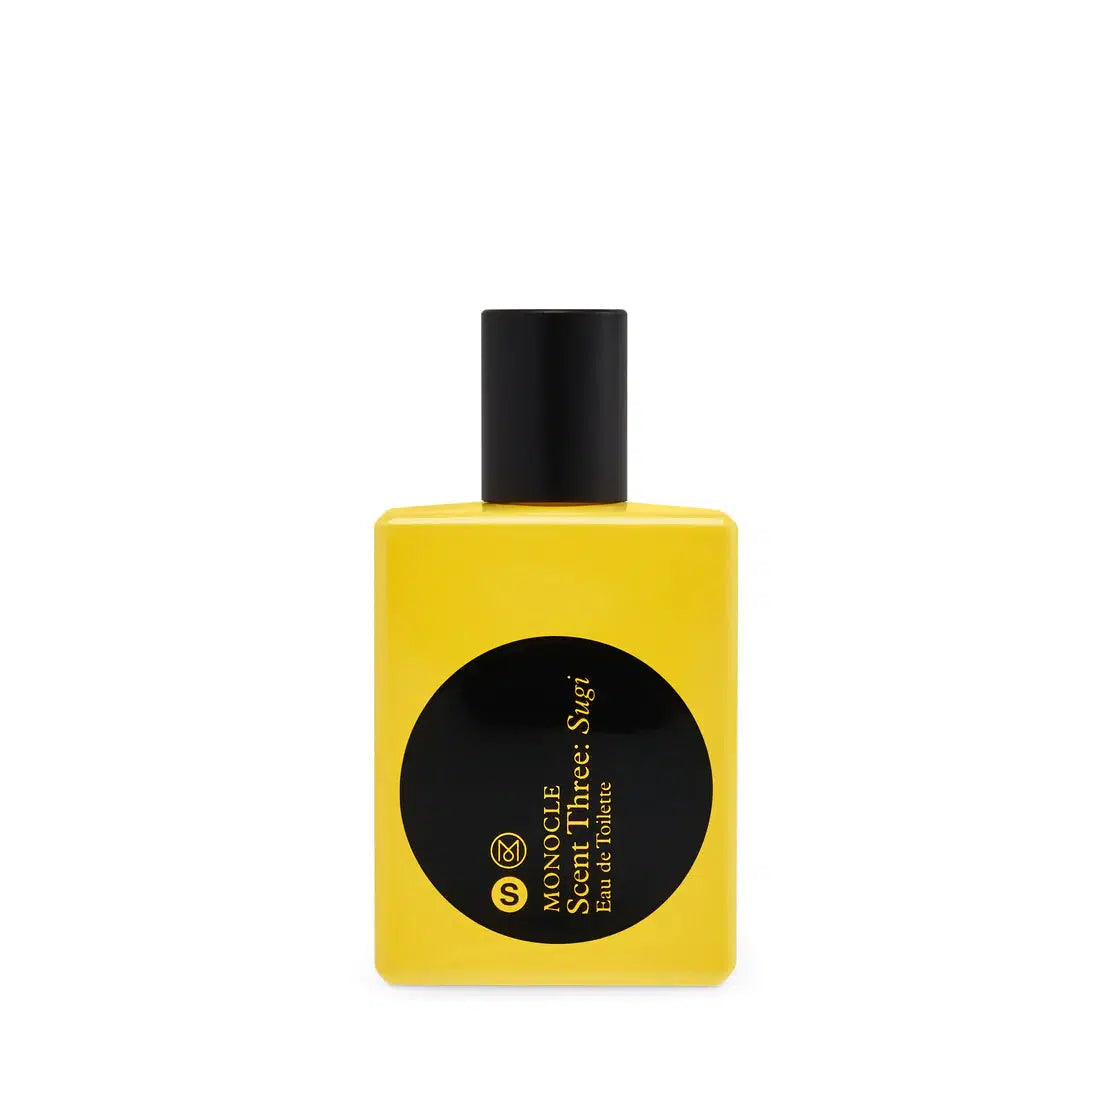 MONOCLE Scent Three: Sugi-Comme des Garçons Parfum-W2 Store